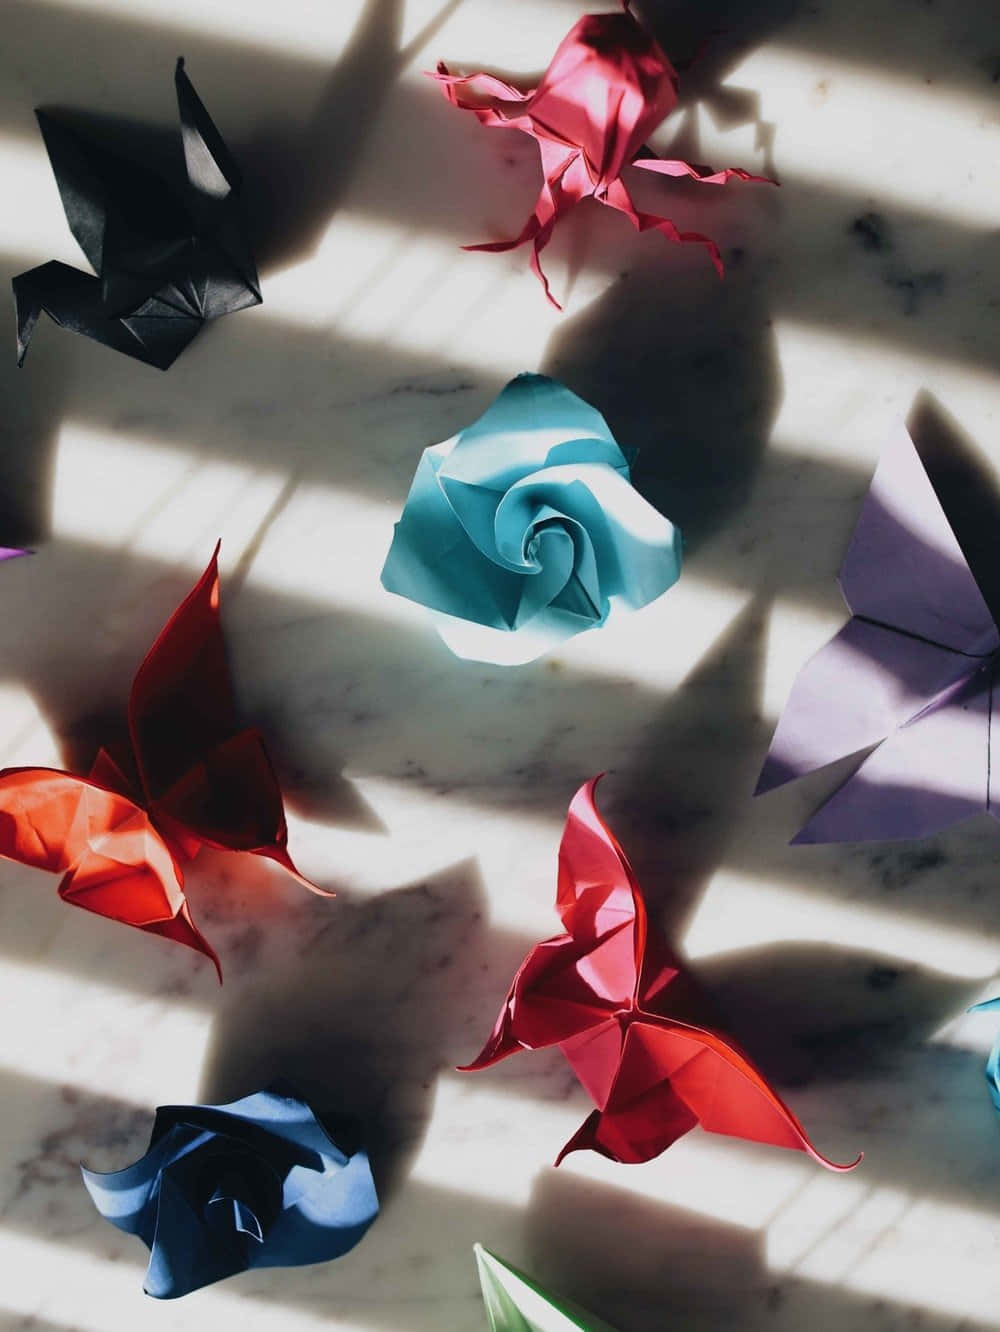 Origamifjärilar På Ett Marmorbord.